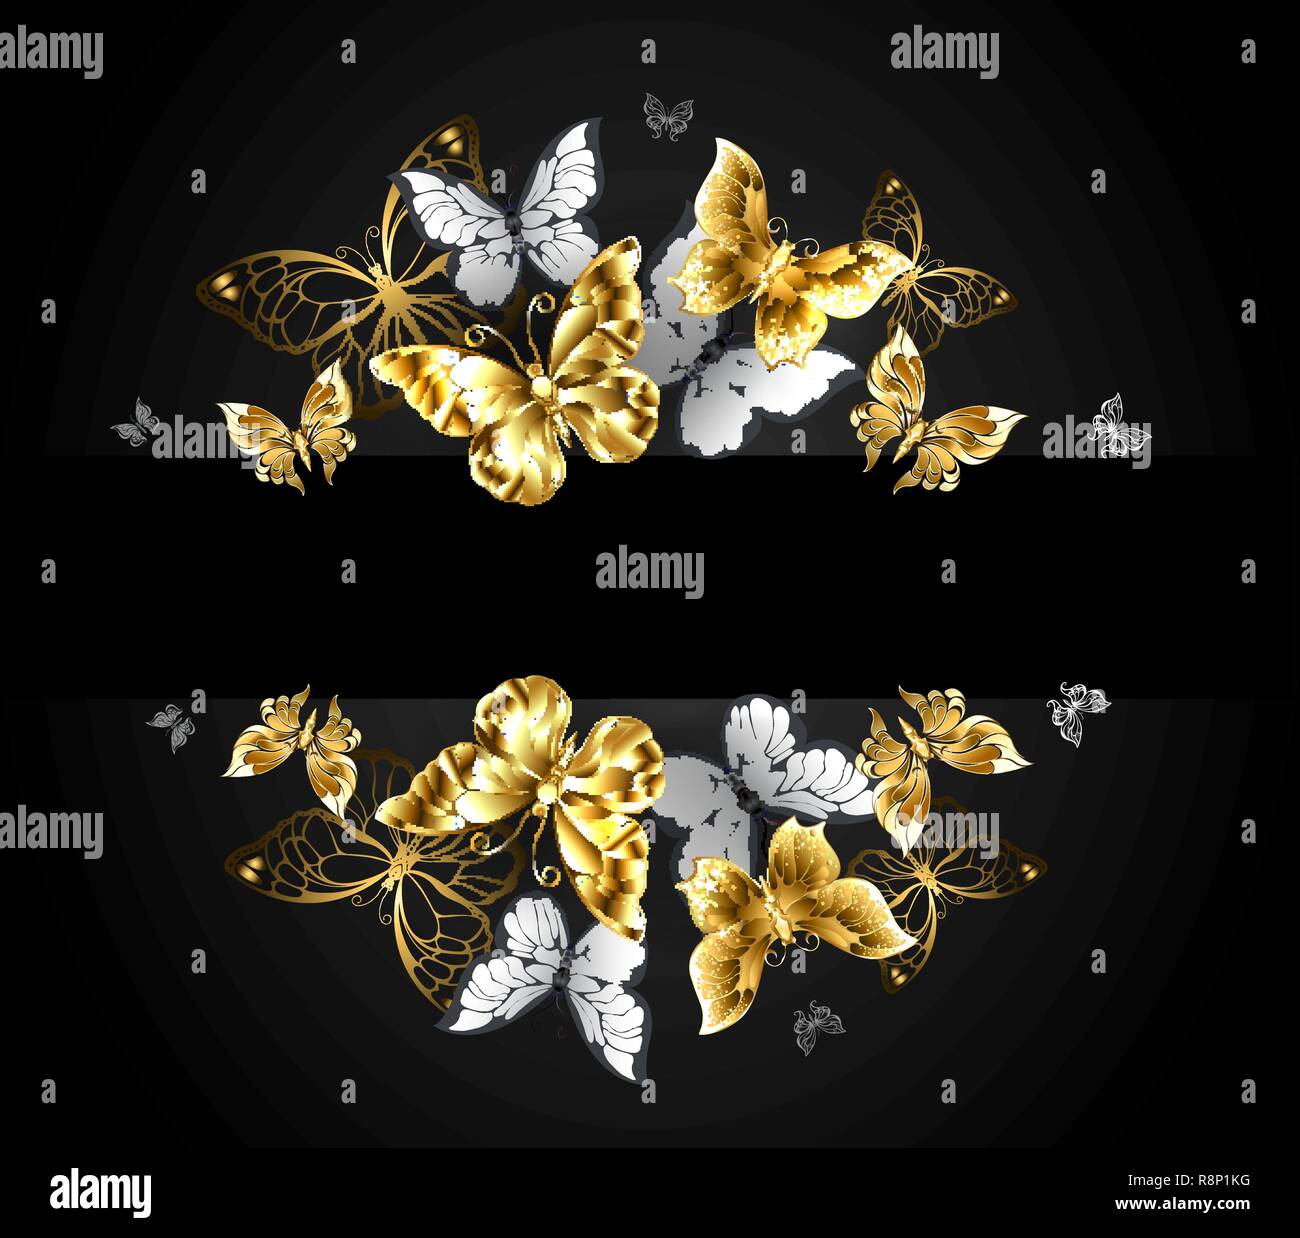 Design mit Schmuck gold Schmetterlinge und realistische weiße Schmetterlinge auf schwarzen Hintergrund. Stock Vektor